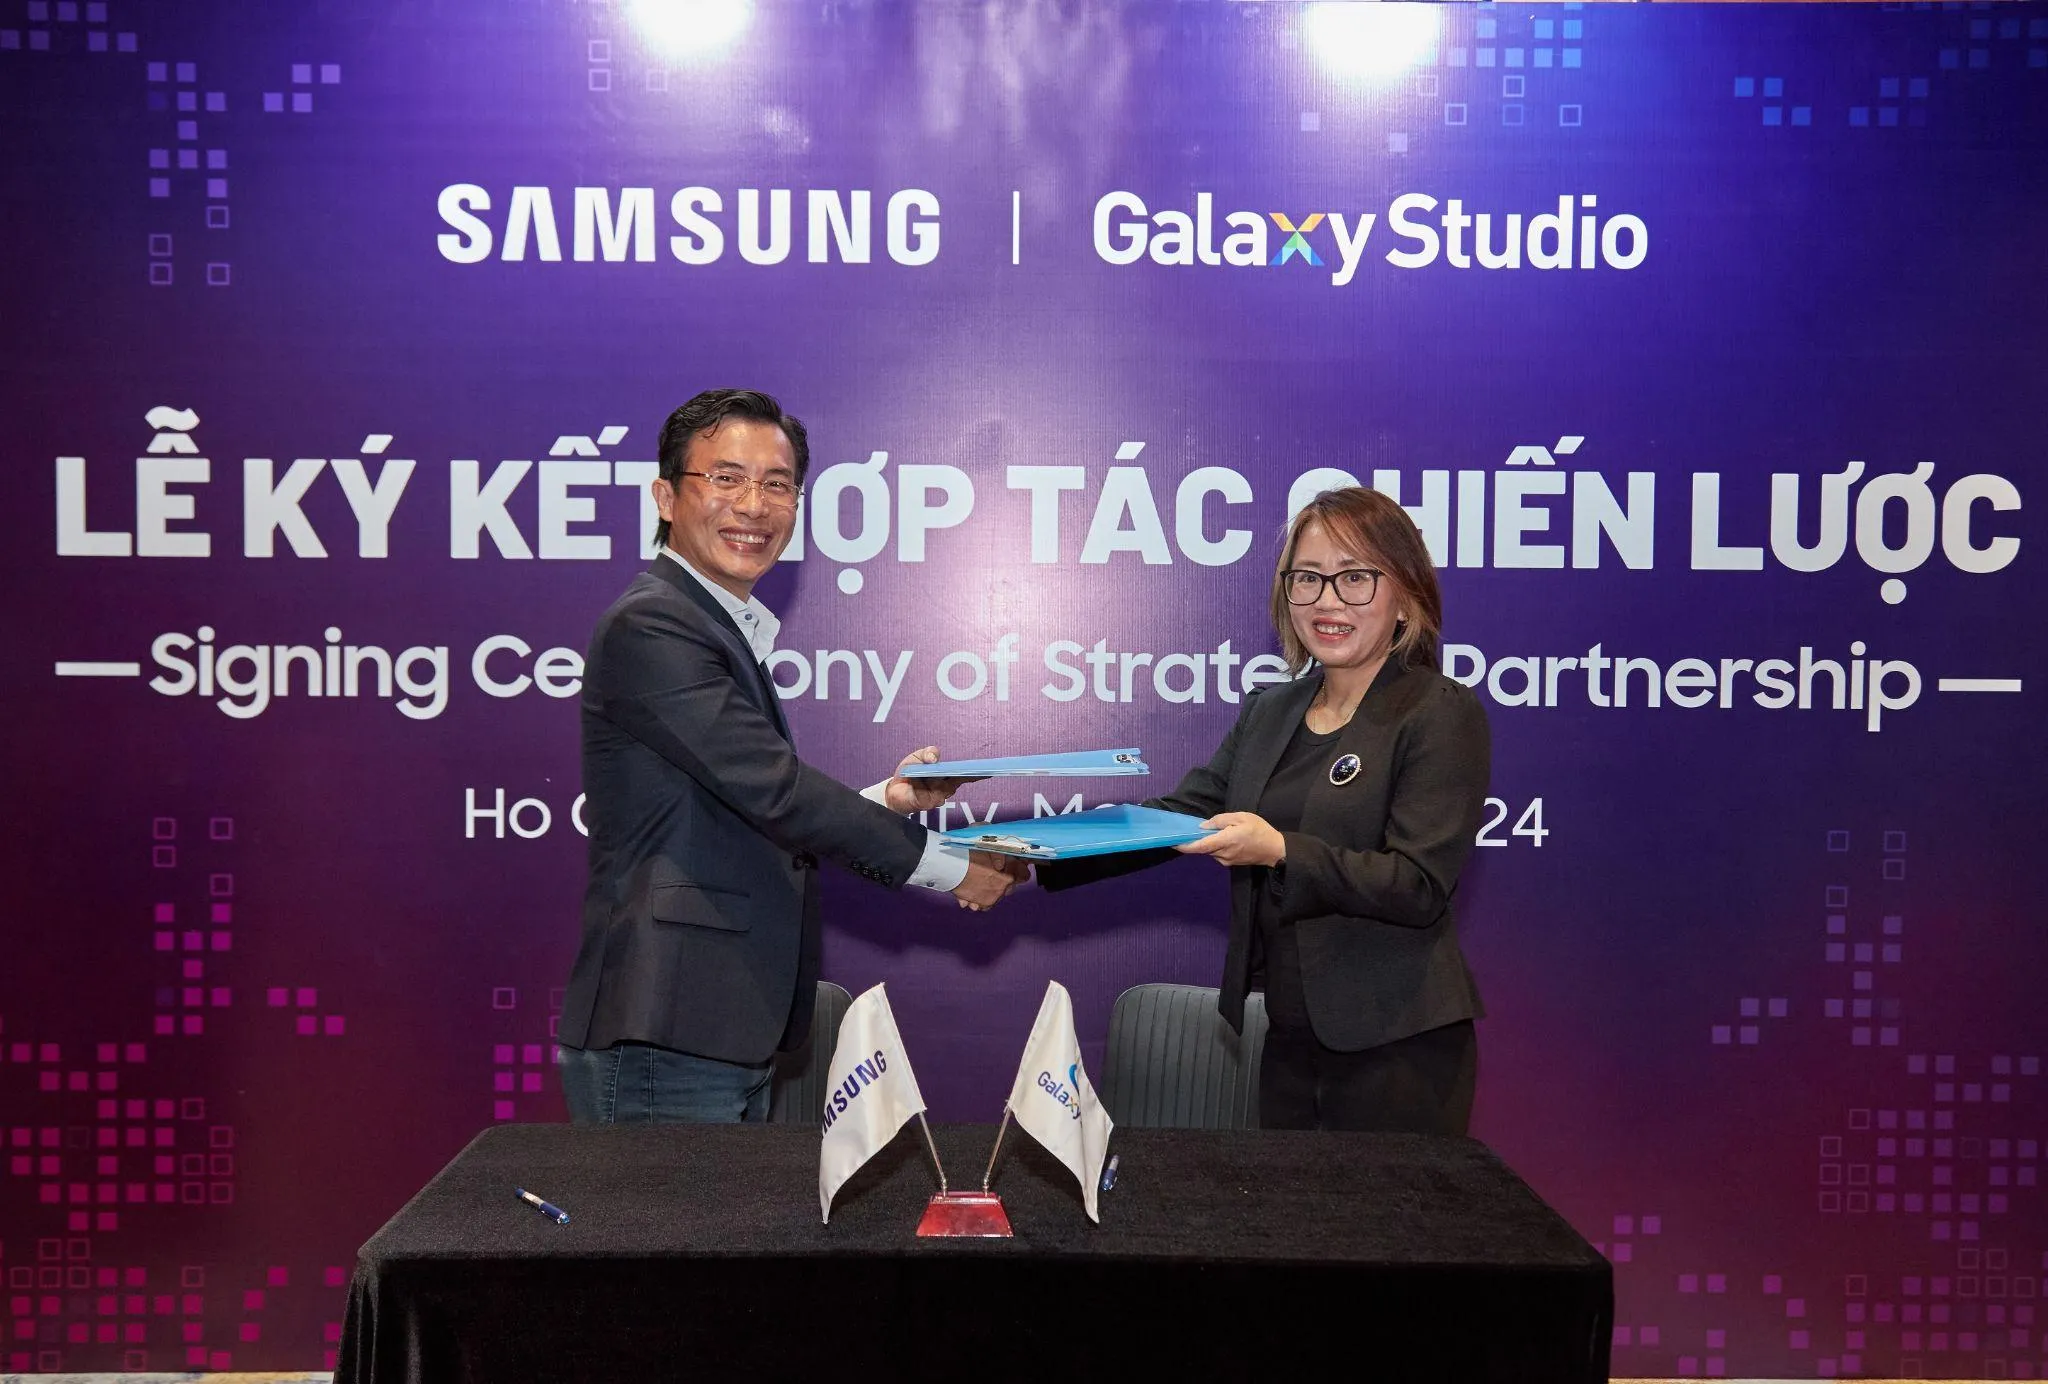 Samsung hợp tác cùng Galaxy Studio mang đến trải nghiệm điện ảnh tuyệt vời